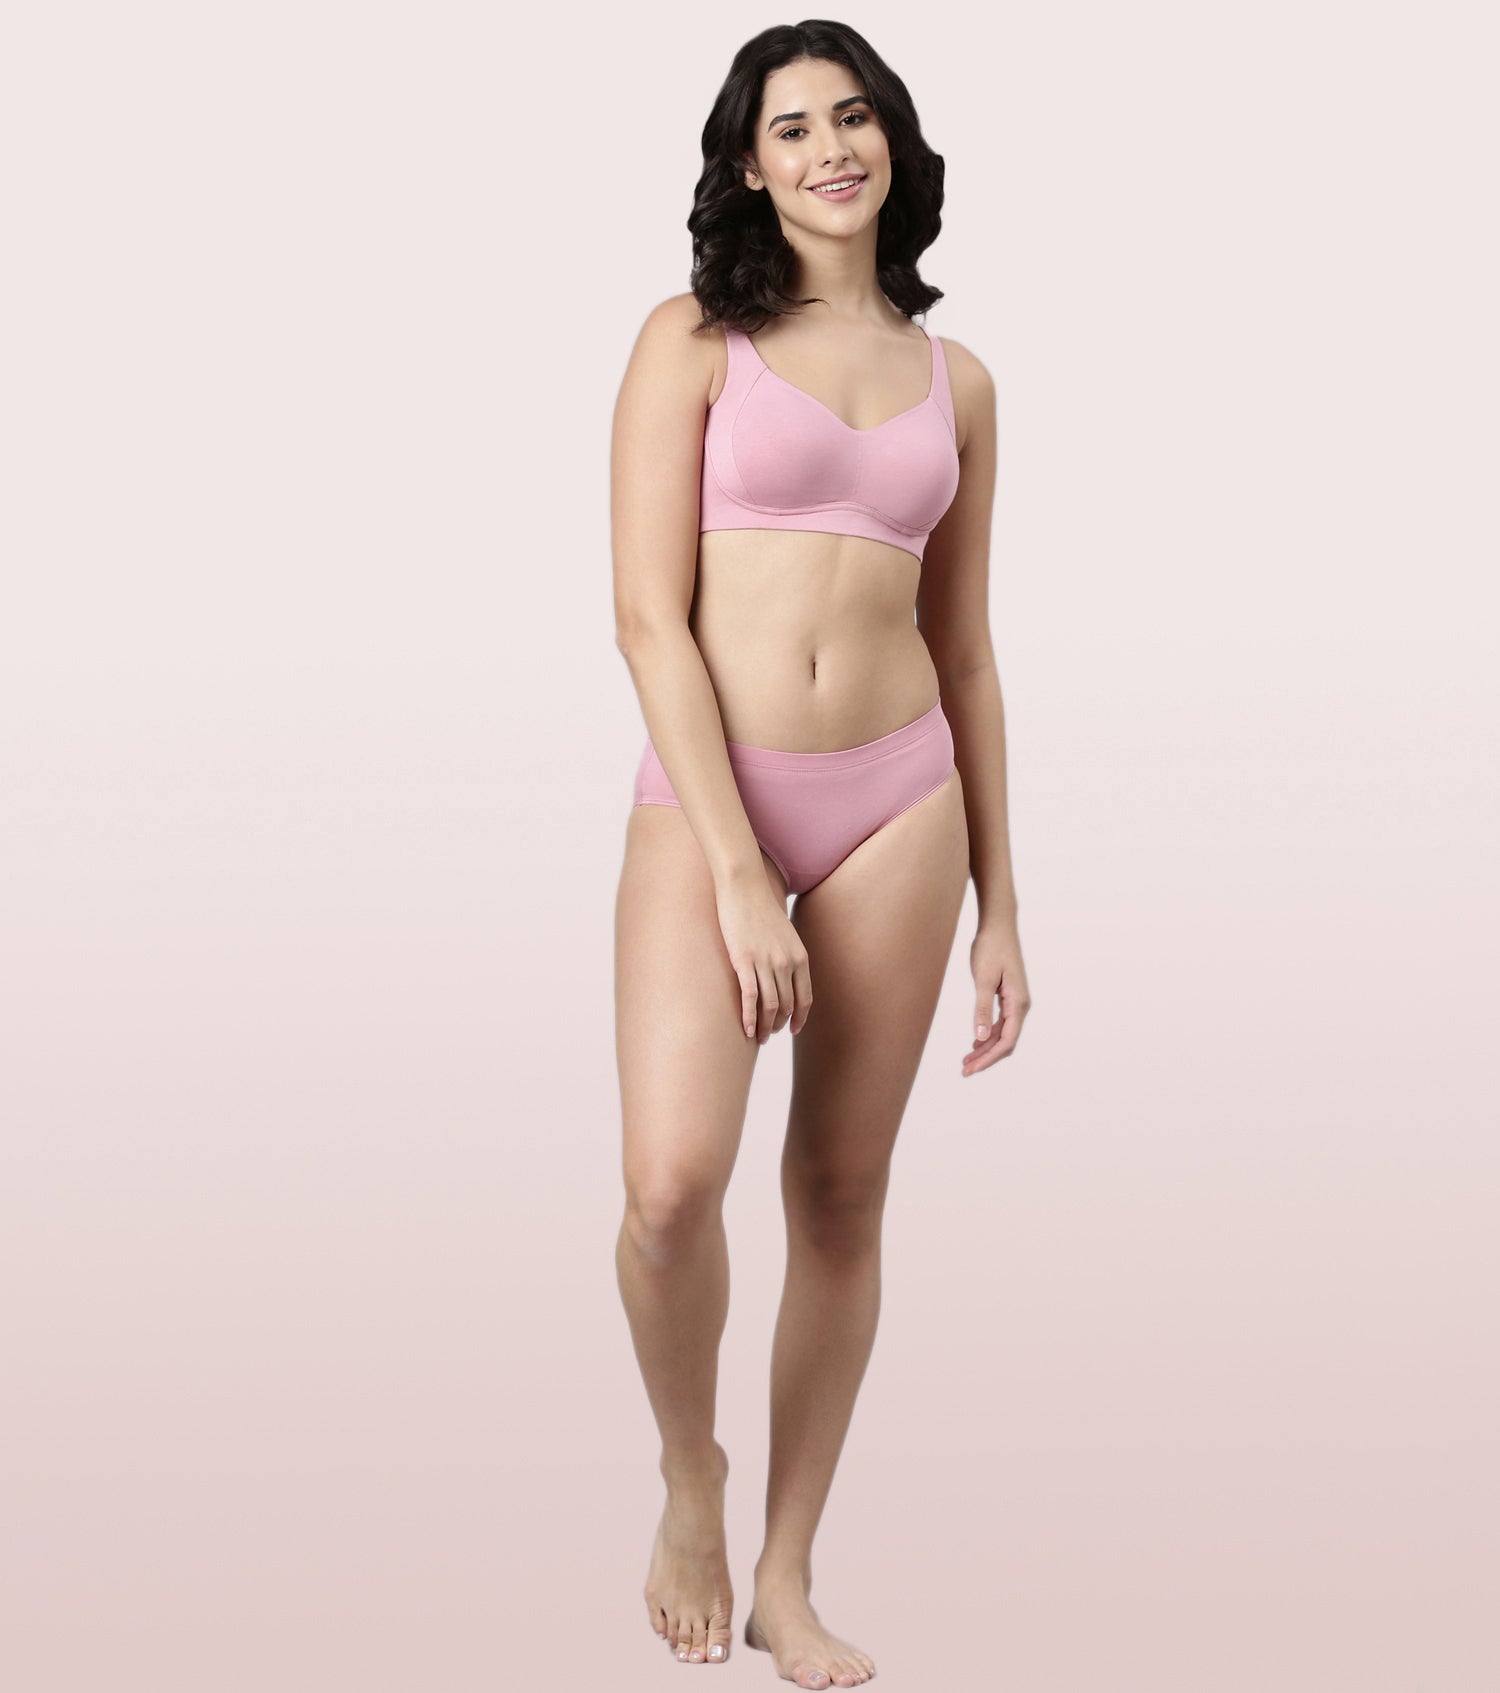 Orina Open Back Bra Top - Shop flexiflow Apparel Women's Athletic Underwear  - Pinkoi